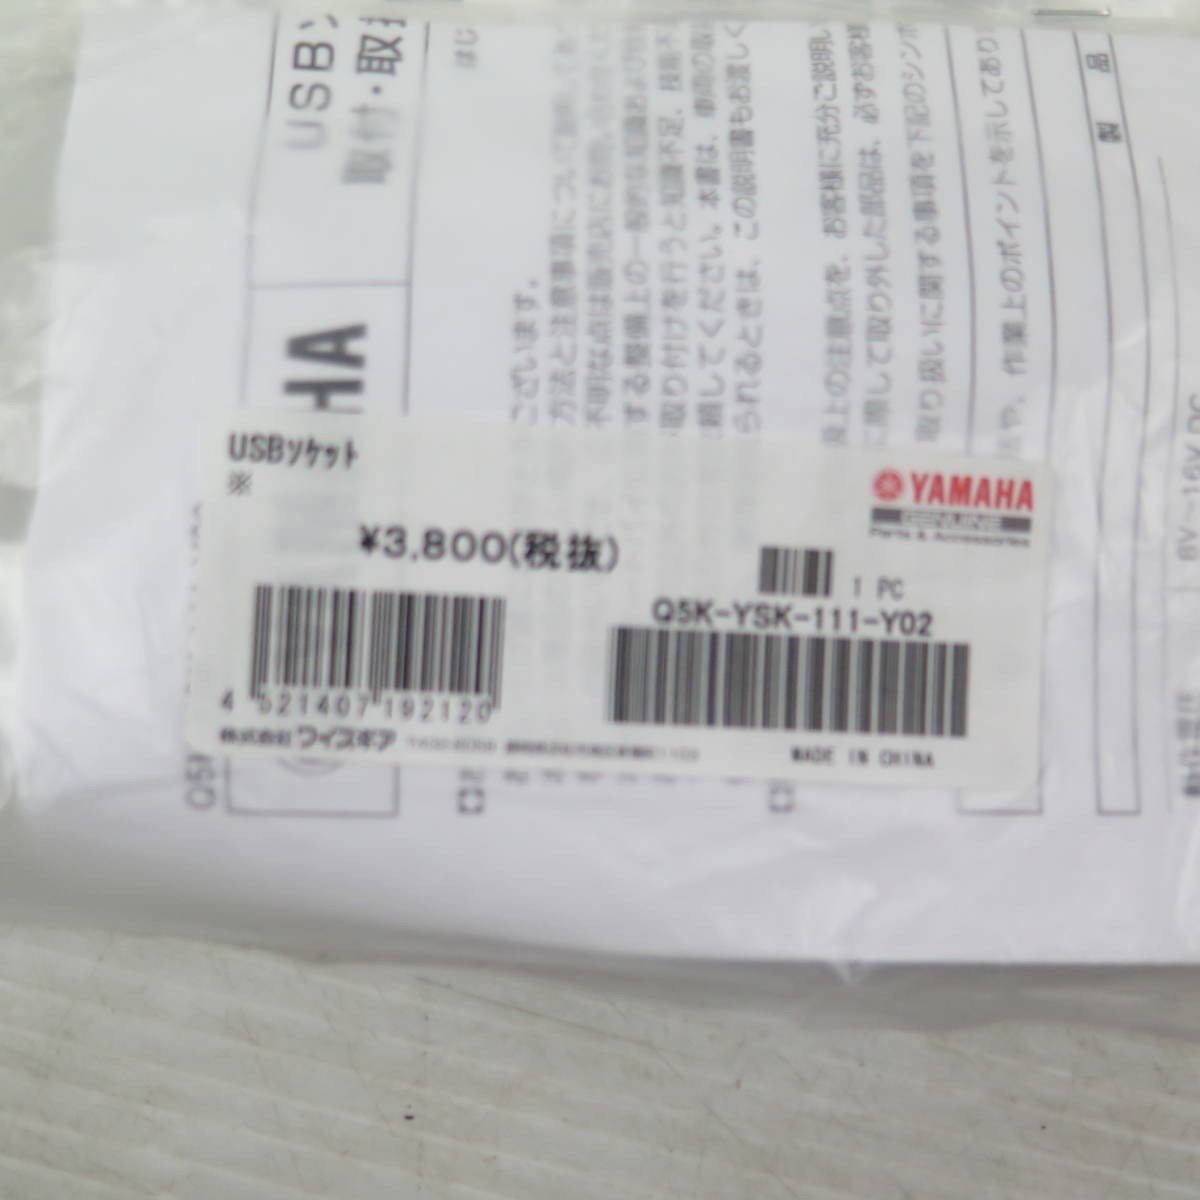 ◆ヤマハ純正　新品未使用 Q5K-YSK-111-Y02 XMAX BG62 USBソケット 2022.03.08.27_画像4